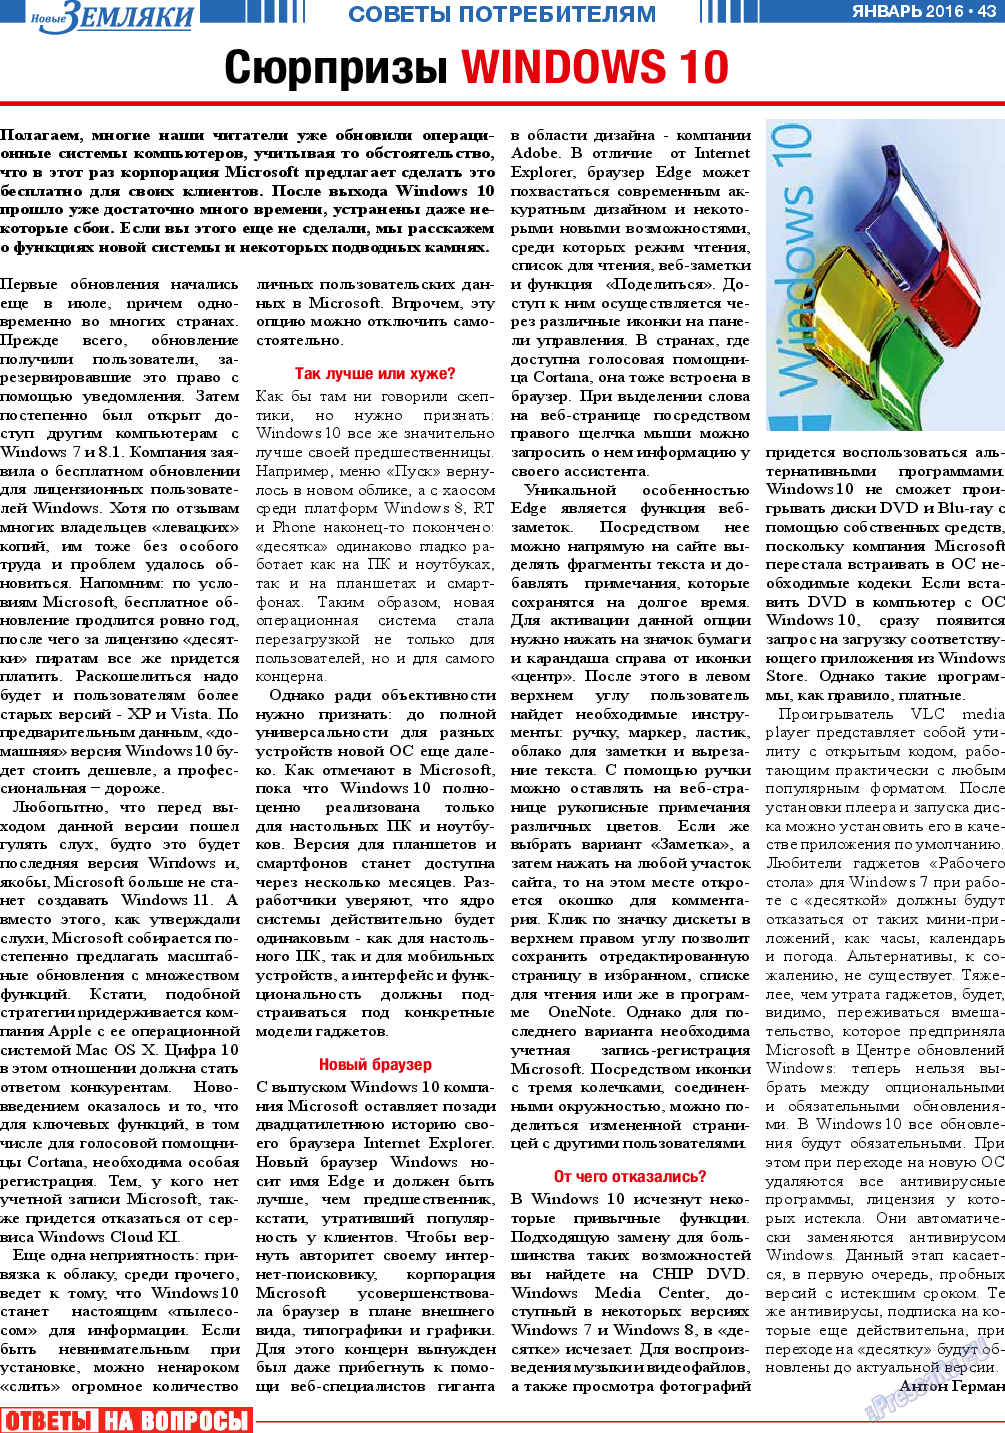 Новые Земляки (газета). 2016 год, номер 1, стр. 43